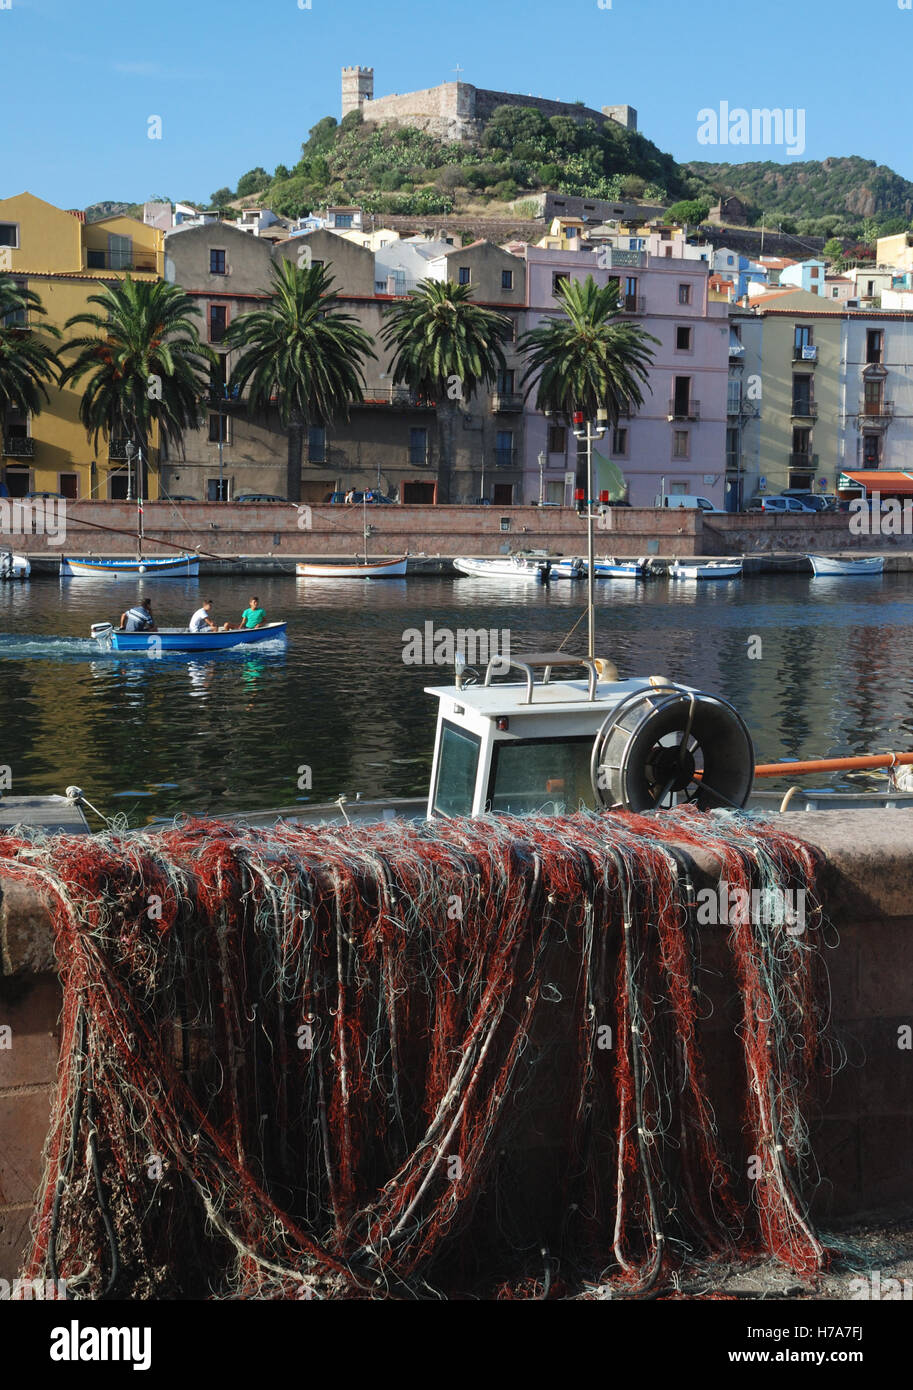 Fishing nets in Bosa, Sardina, Italy. Stock Photo